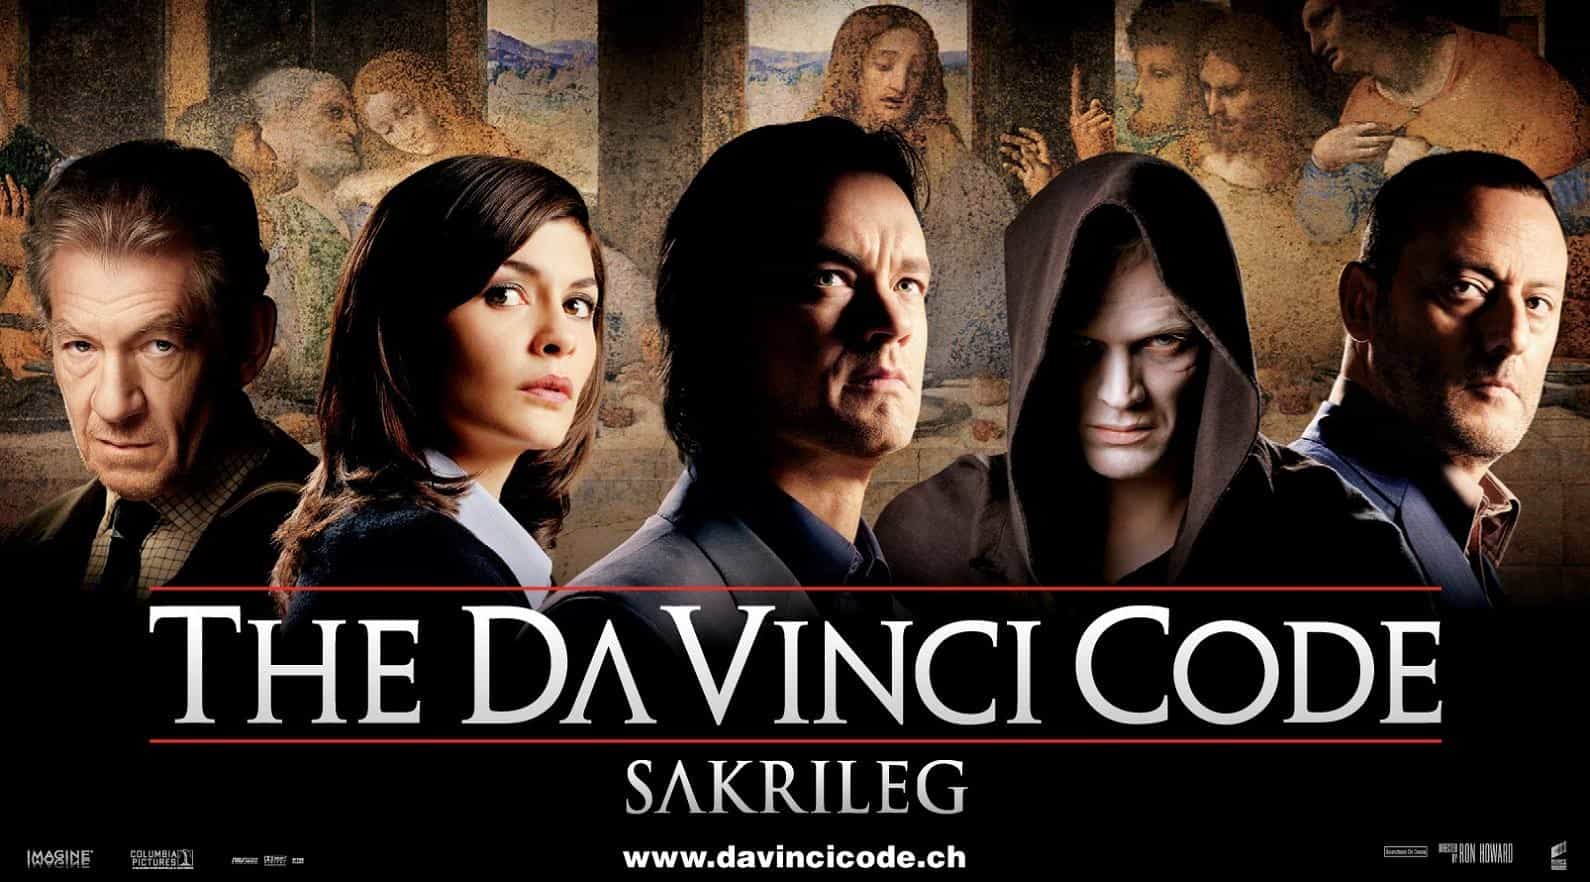 The Da Vinci Code 4K 2006 big poster